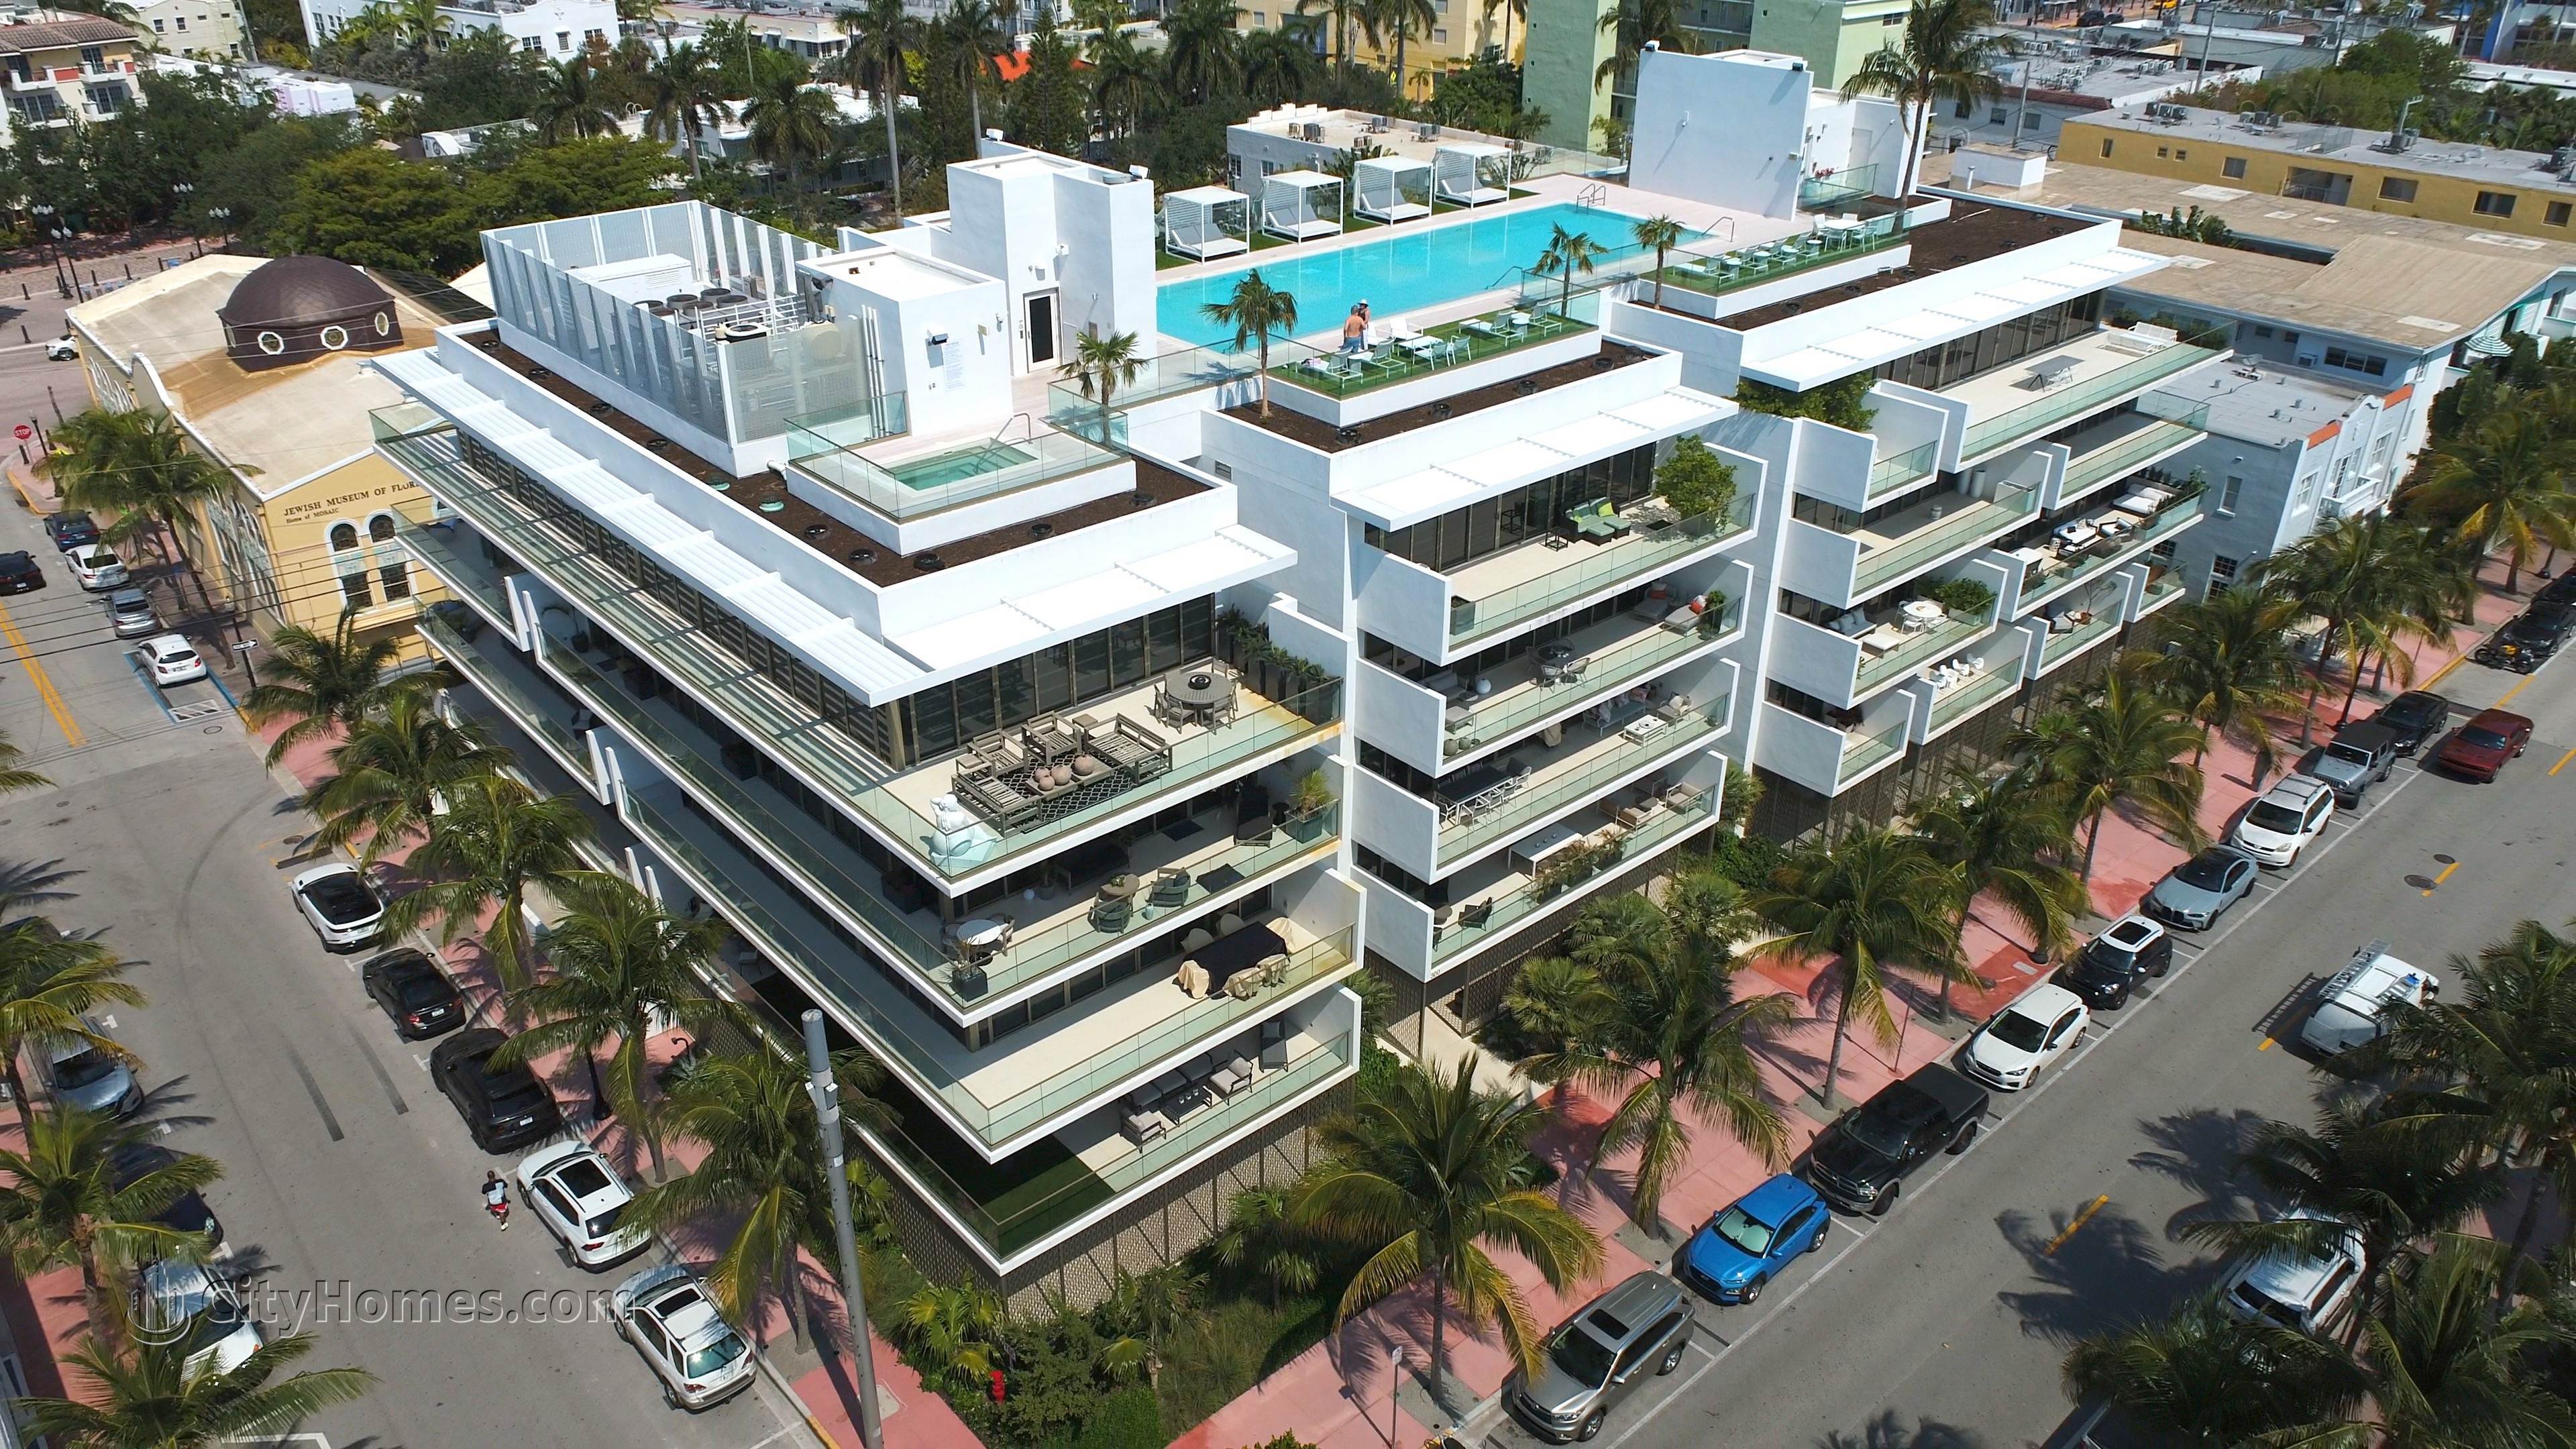 300 COLLINS  edificio en 300 Collins Avenue, South of Fifth, Miami Beach, FL 33139